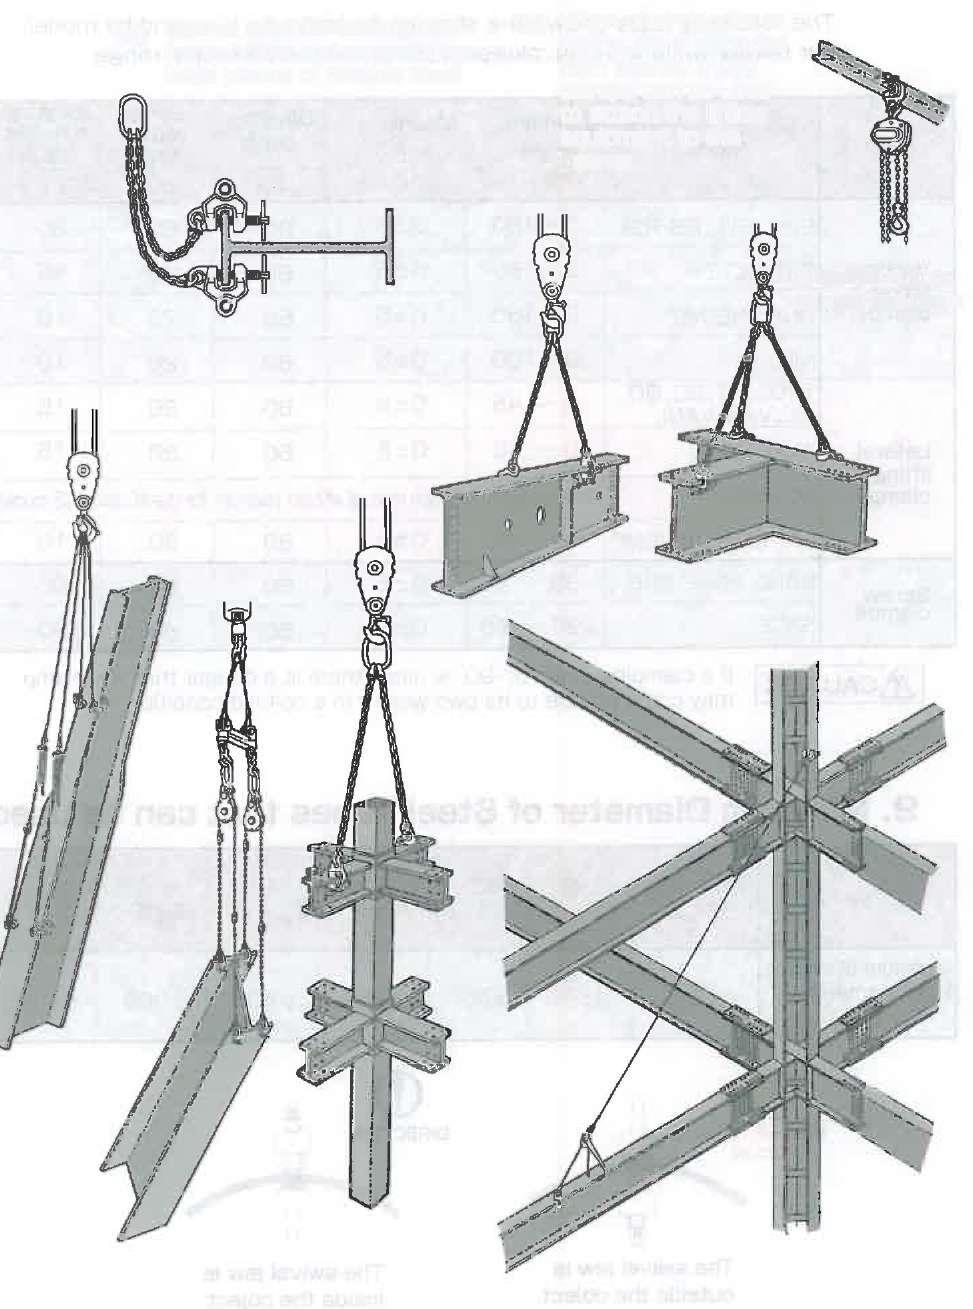 10. Eksempler på bruk 1) På brobjelker, stålrammer og anleggsområder (a) Kan brukes for velt, transport og sammenstilling av store